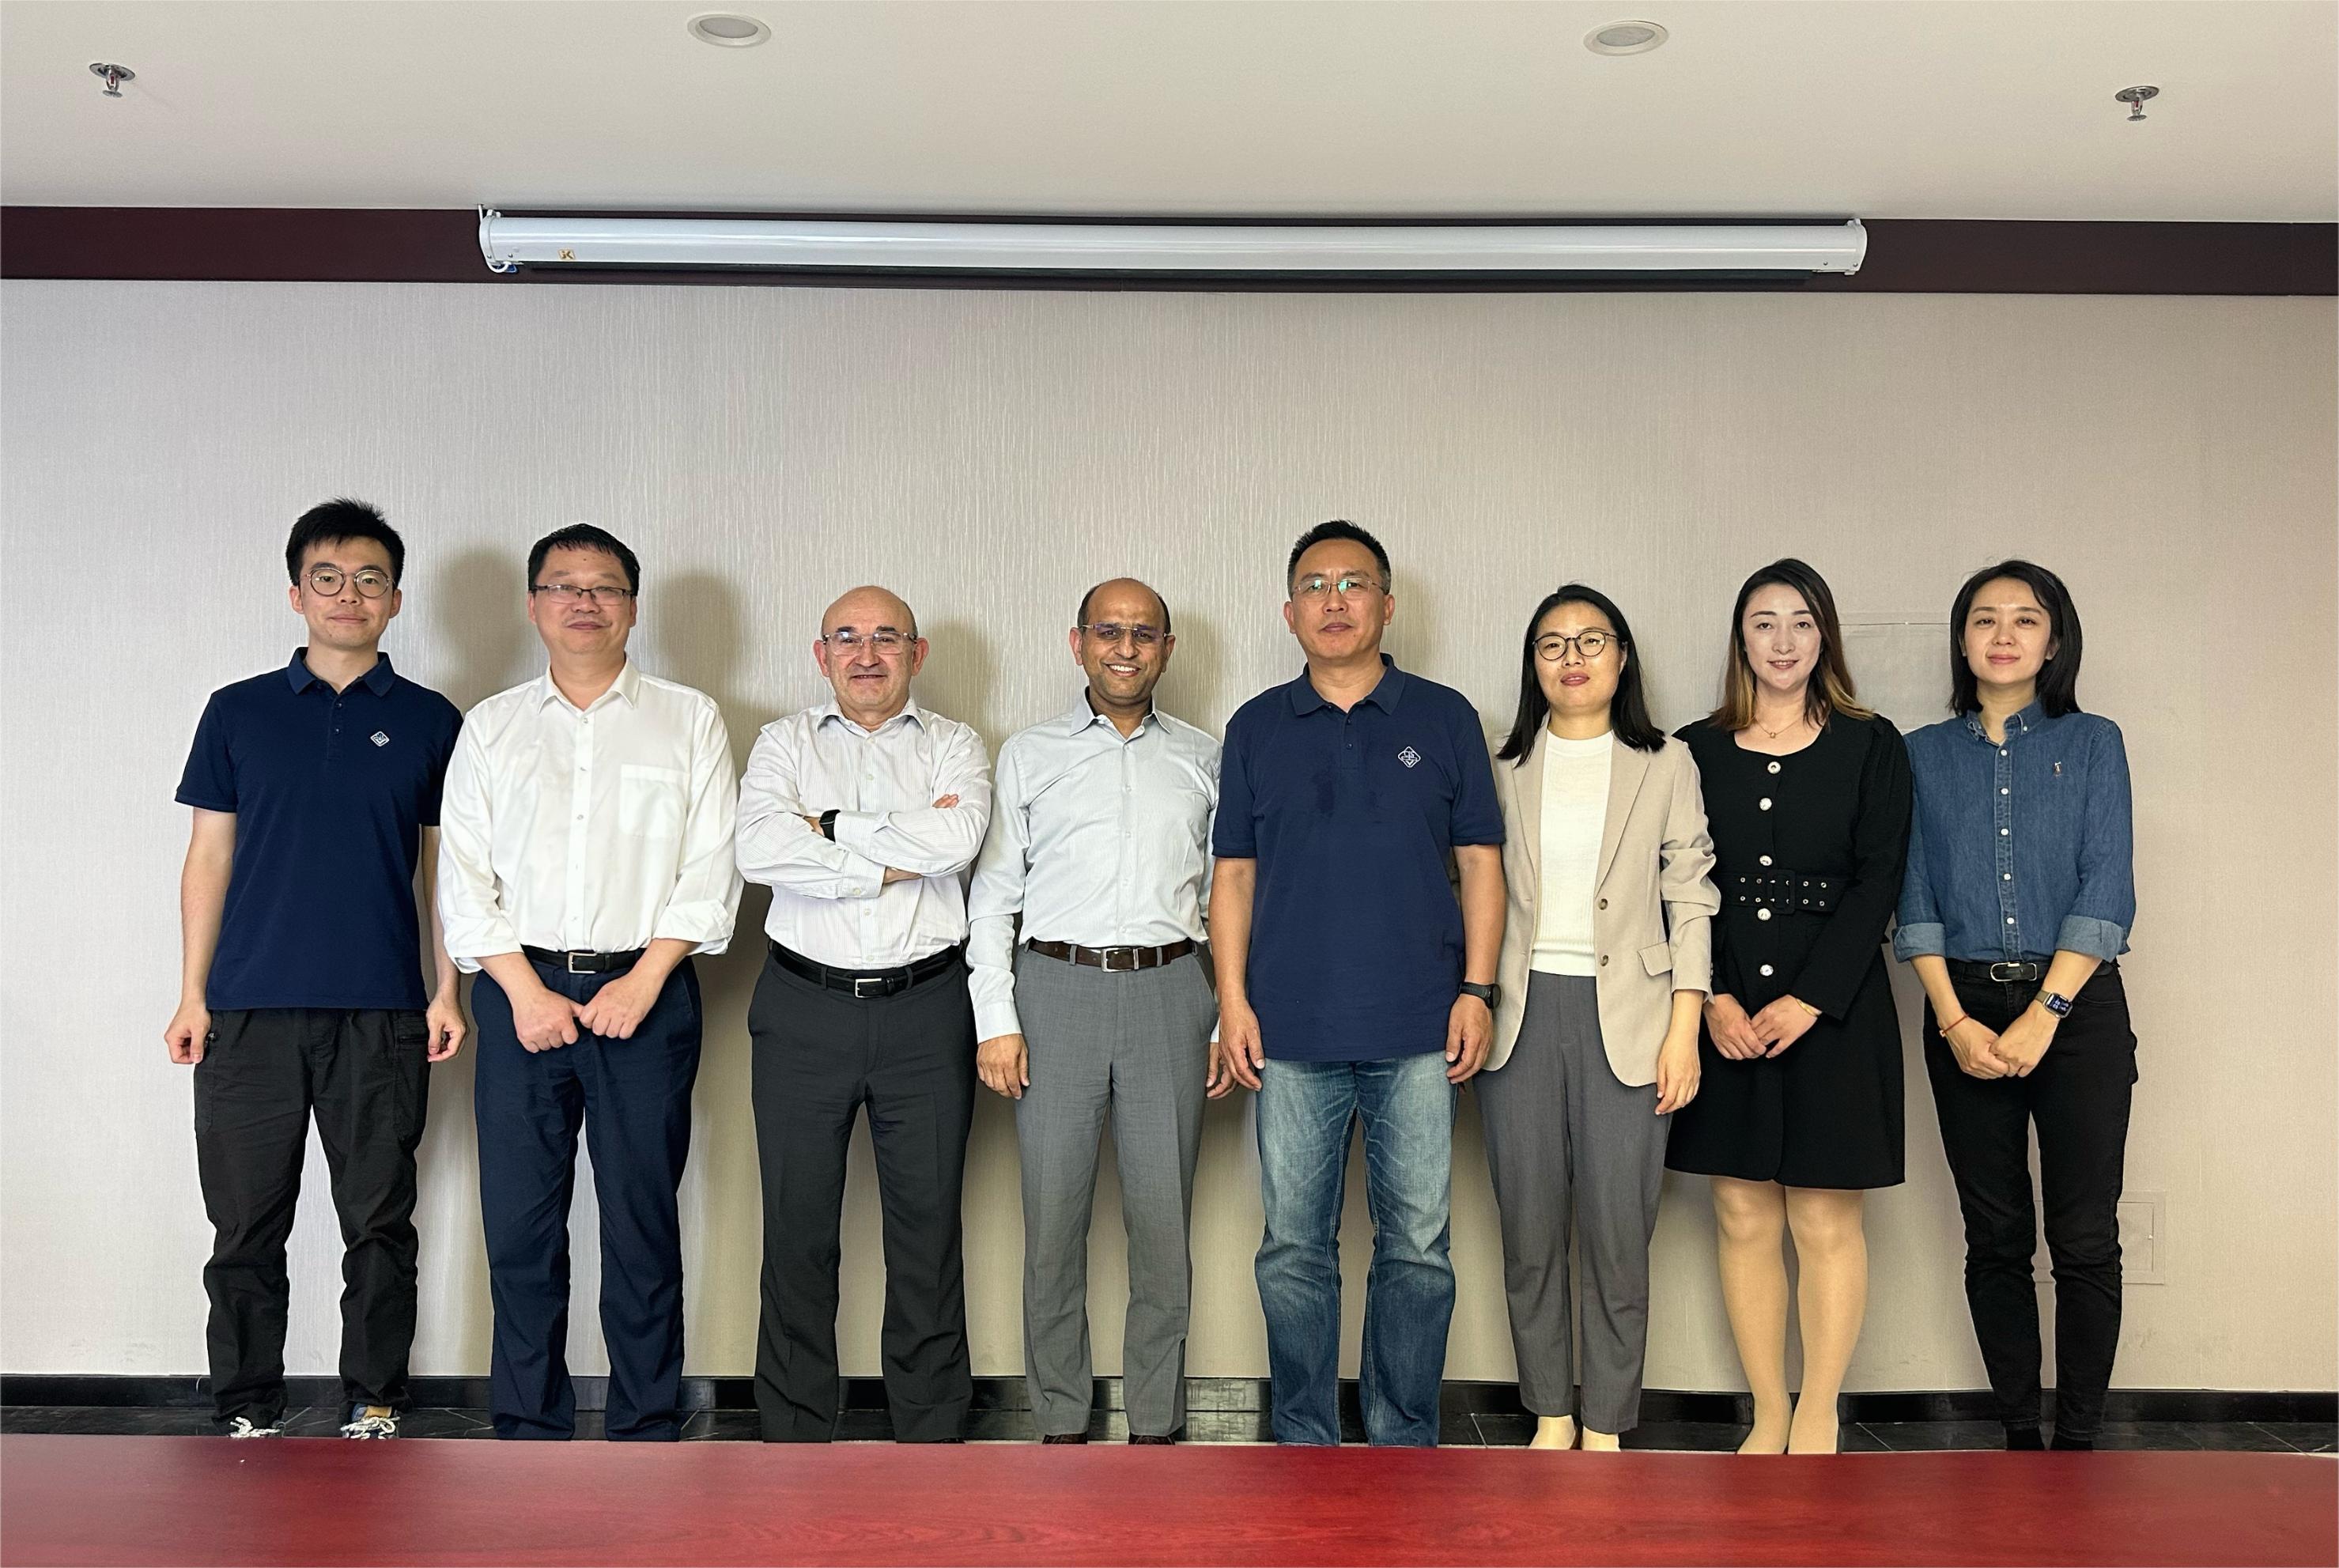 电气与电子工程师协会（IEEE）传感器理事会主席一行到访中国仪器仪表学会